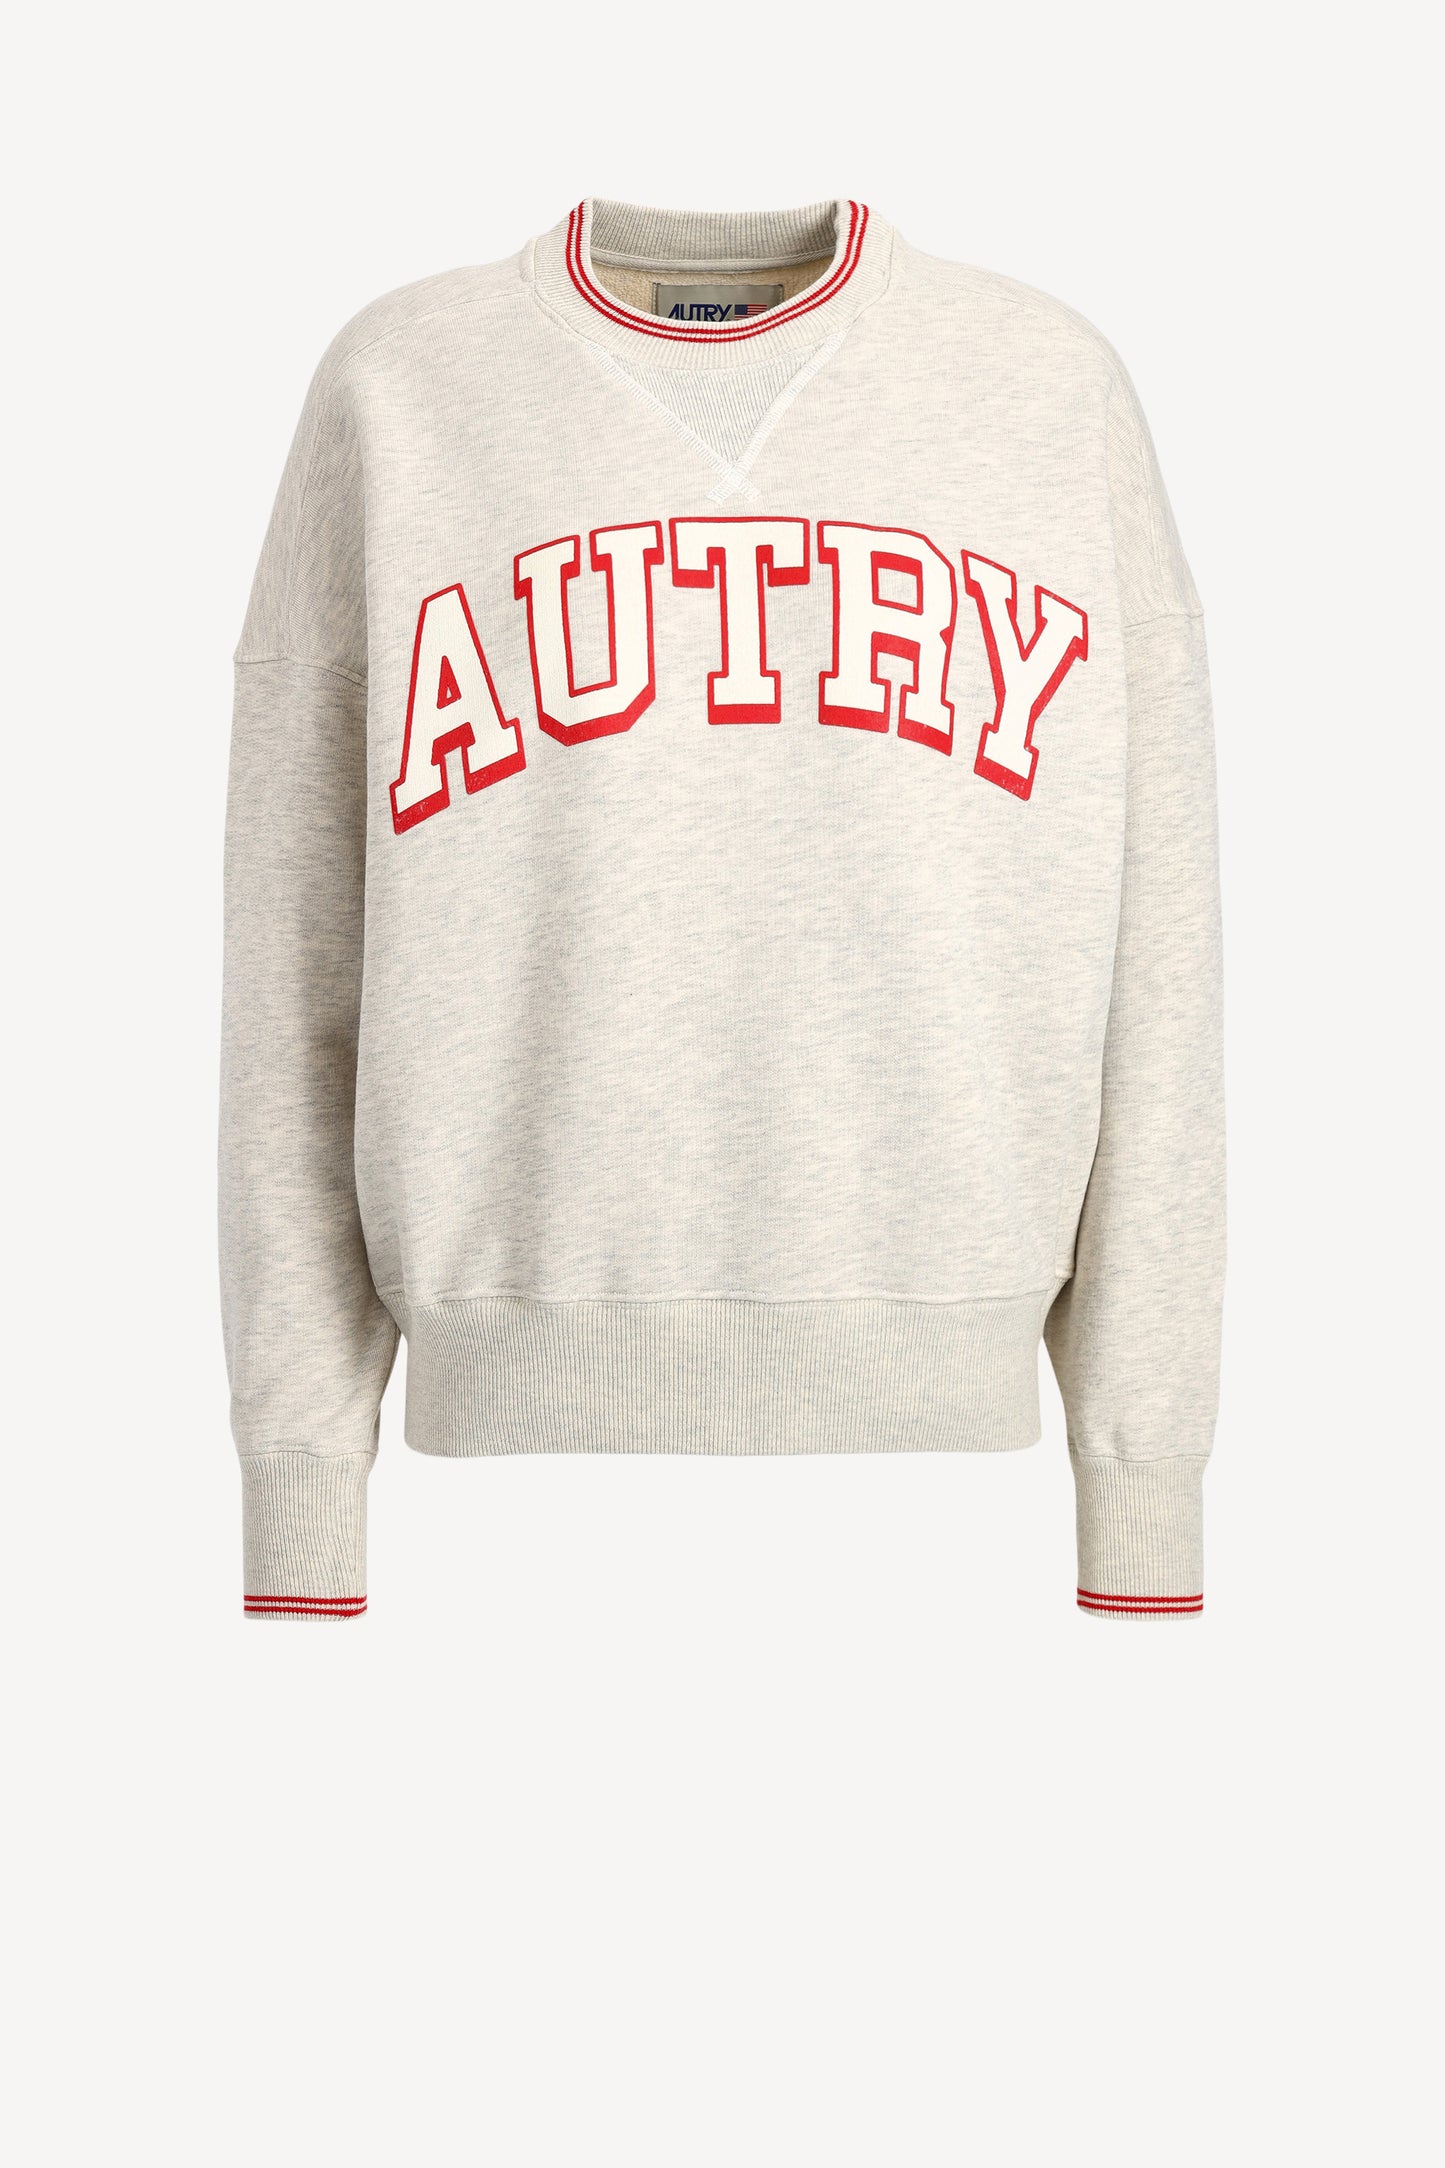 Sweatshirt in Grau/RotAutry - Anita Hass